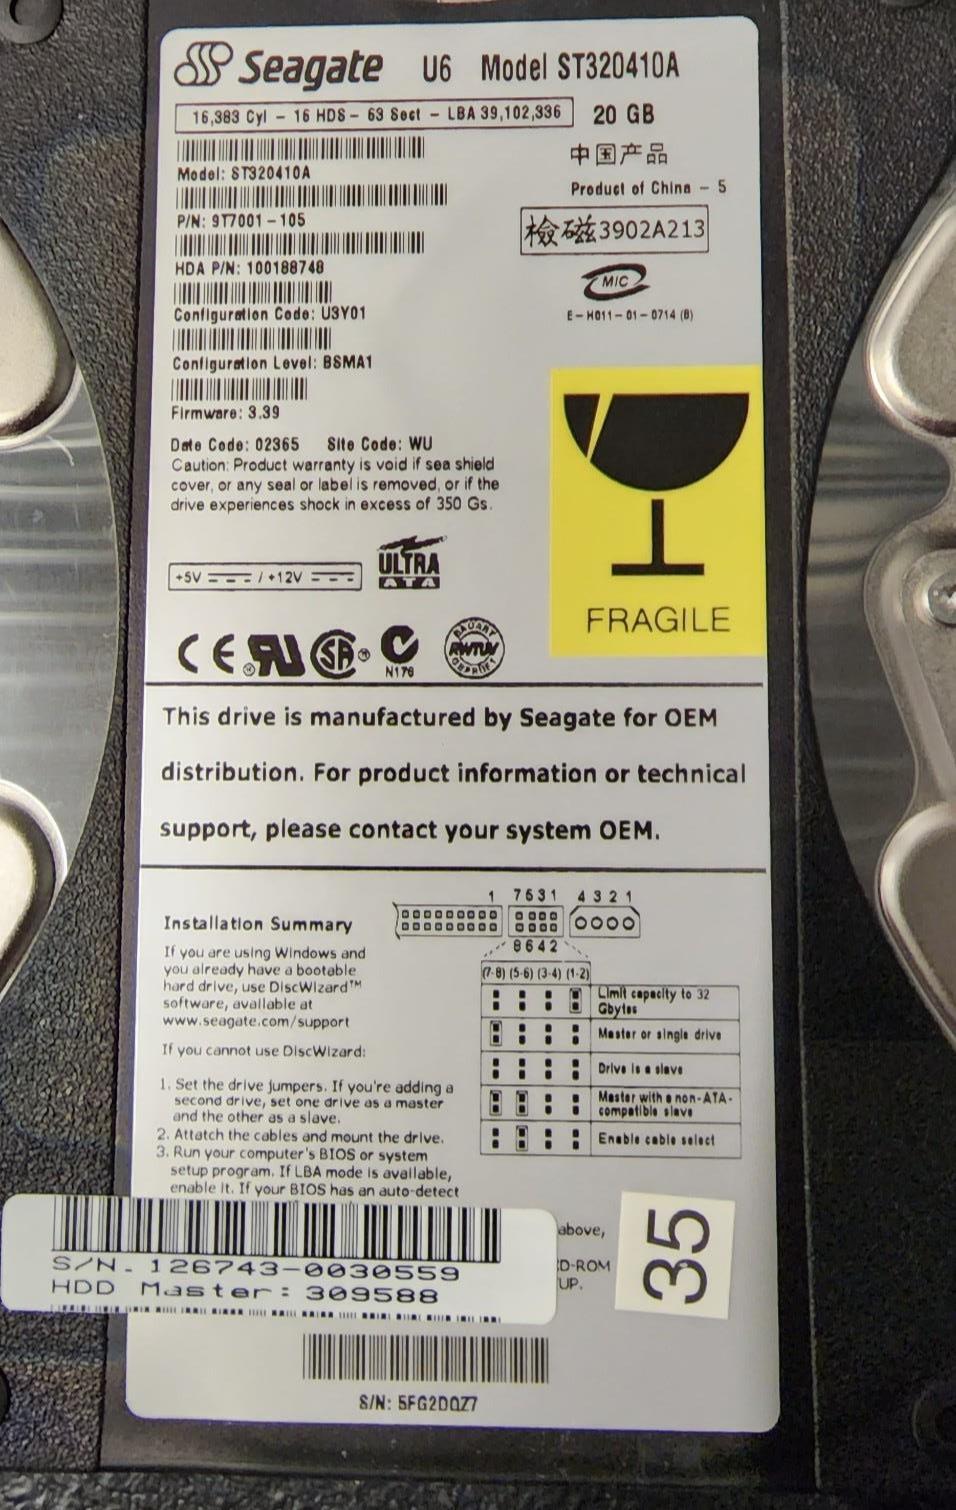 Seagate 9T7001-105 20 GB ST320410A Internal Hard Drive